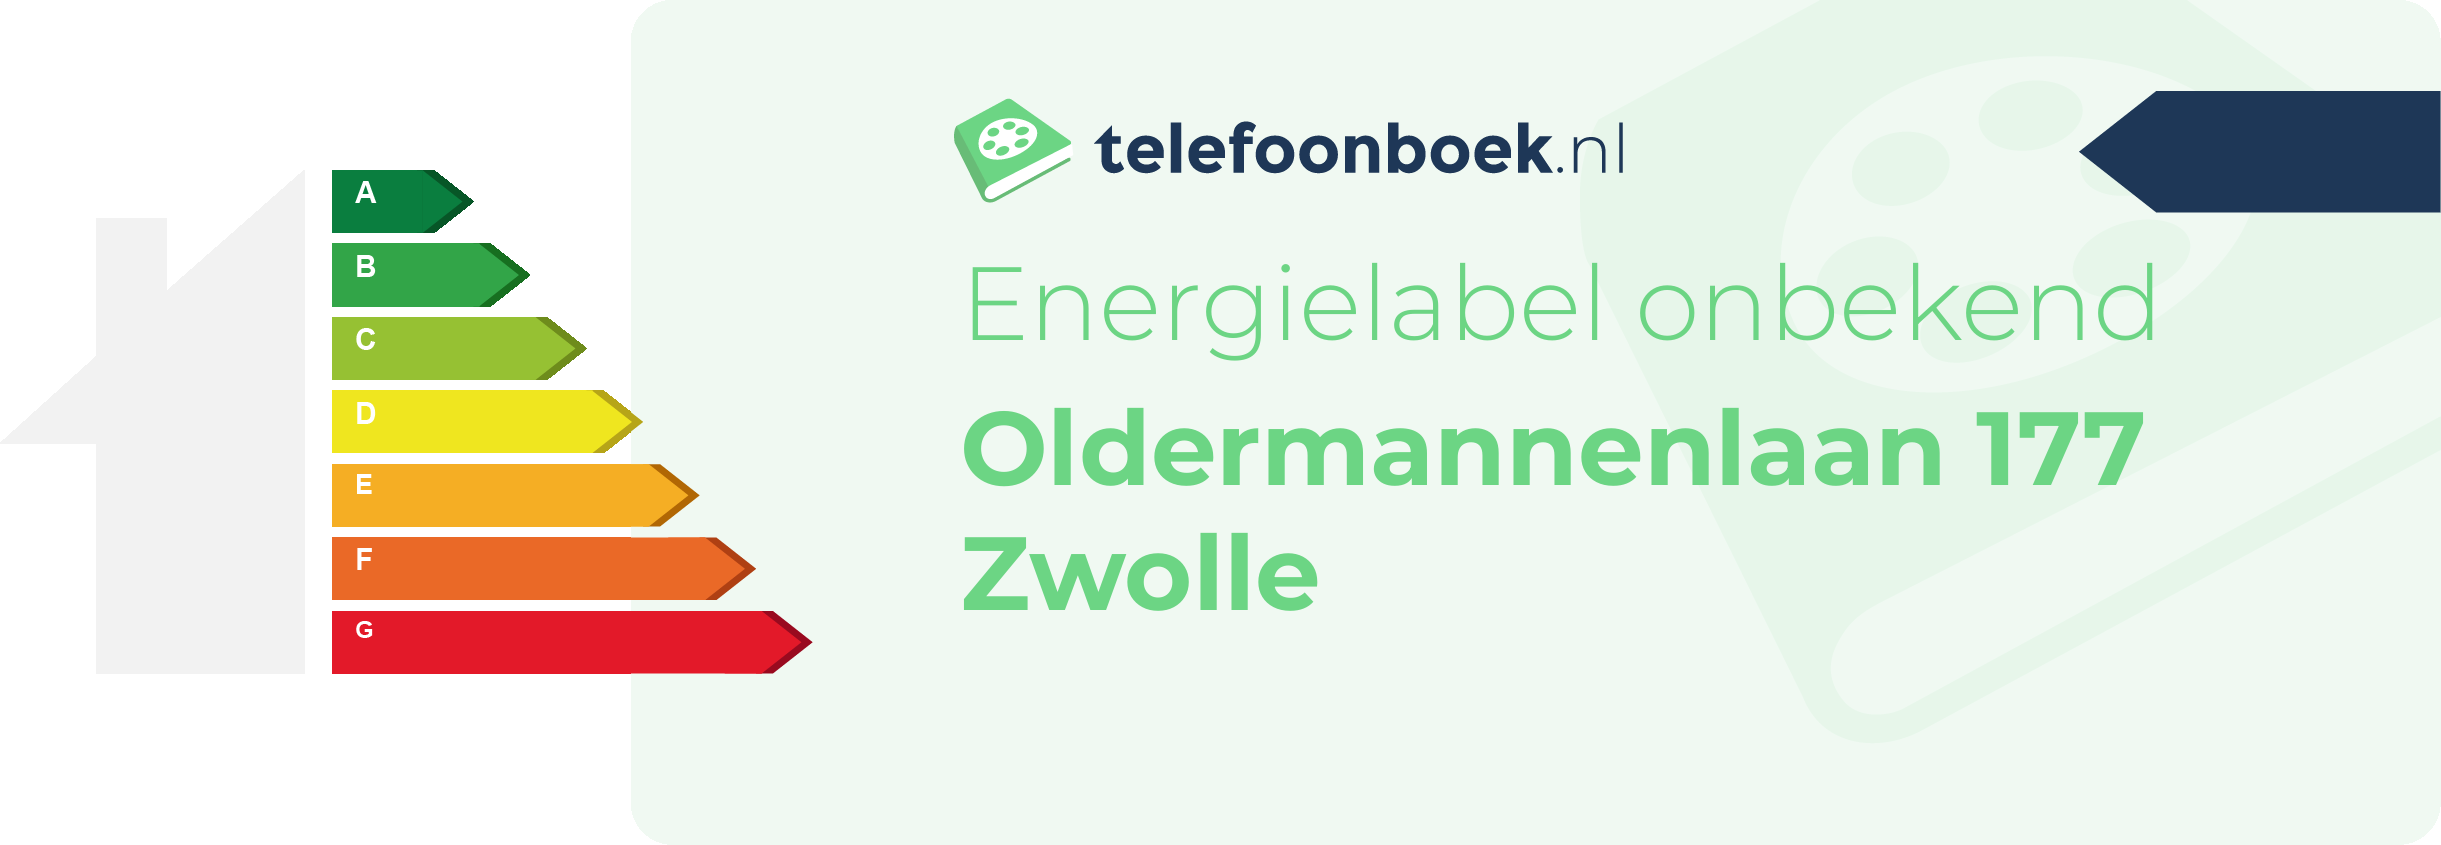 Energielabel Oldermannenlaan 177 Zwolle